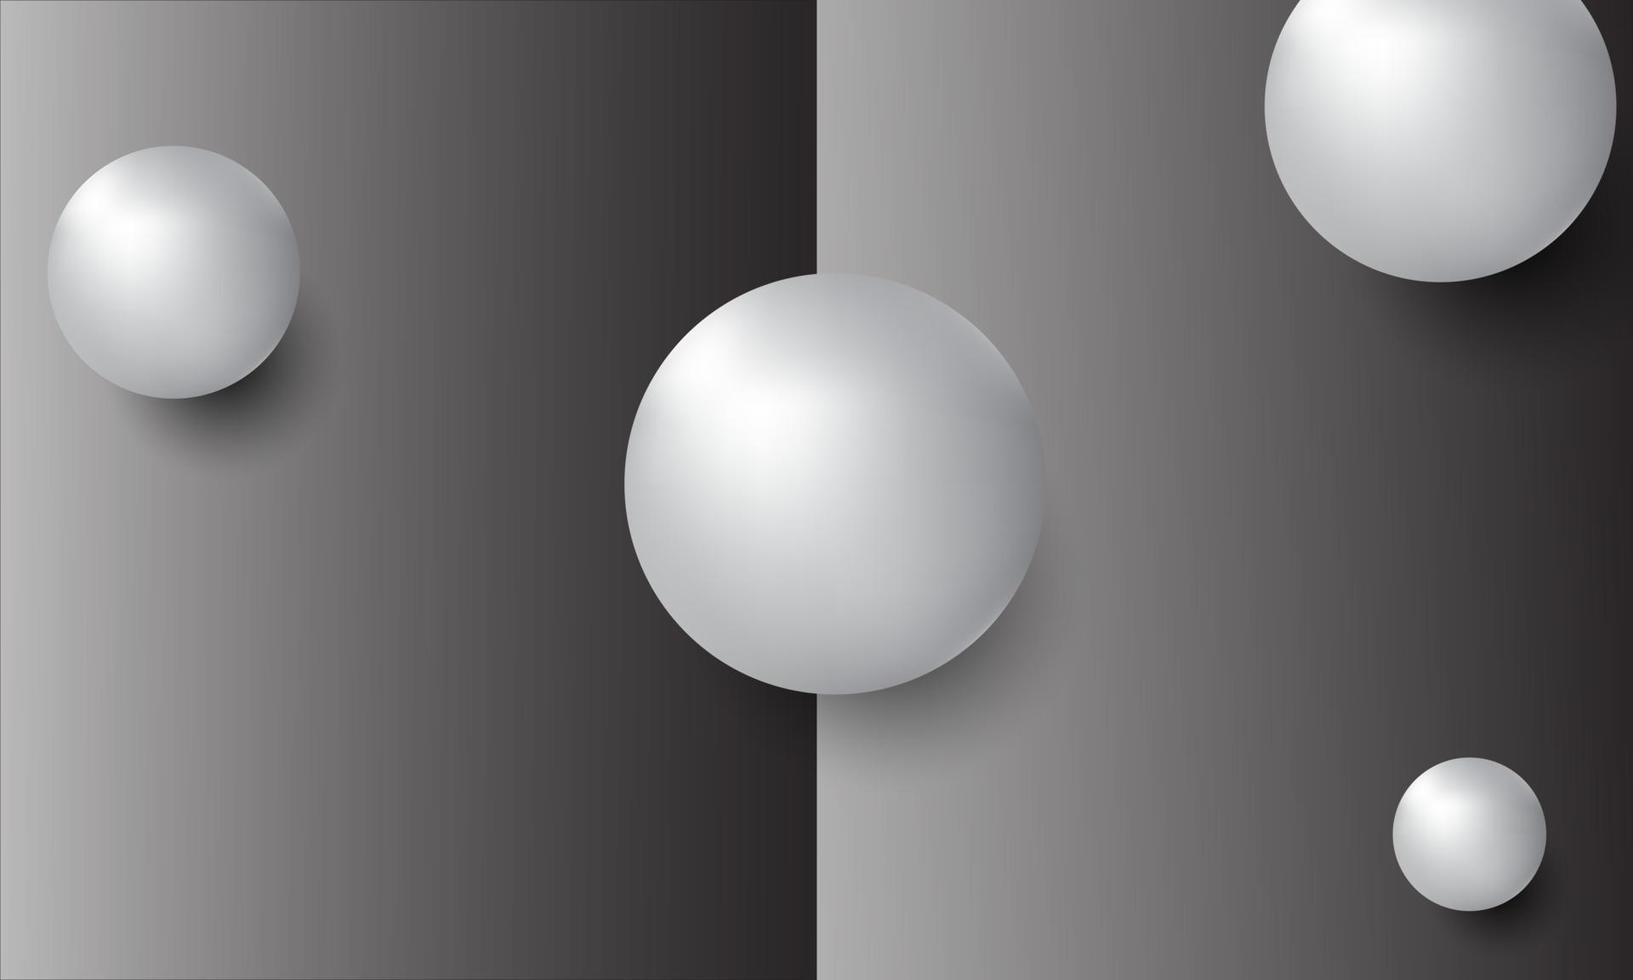 Ilustración 3d de bolas de diferentes tamaños colgando en el espacio. Representación 3d aislada sobre fondo blanco. vector